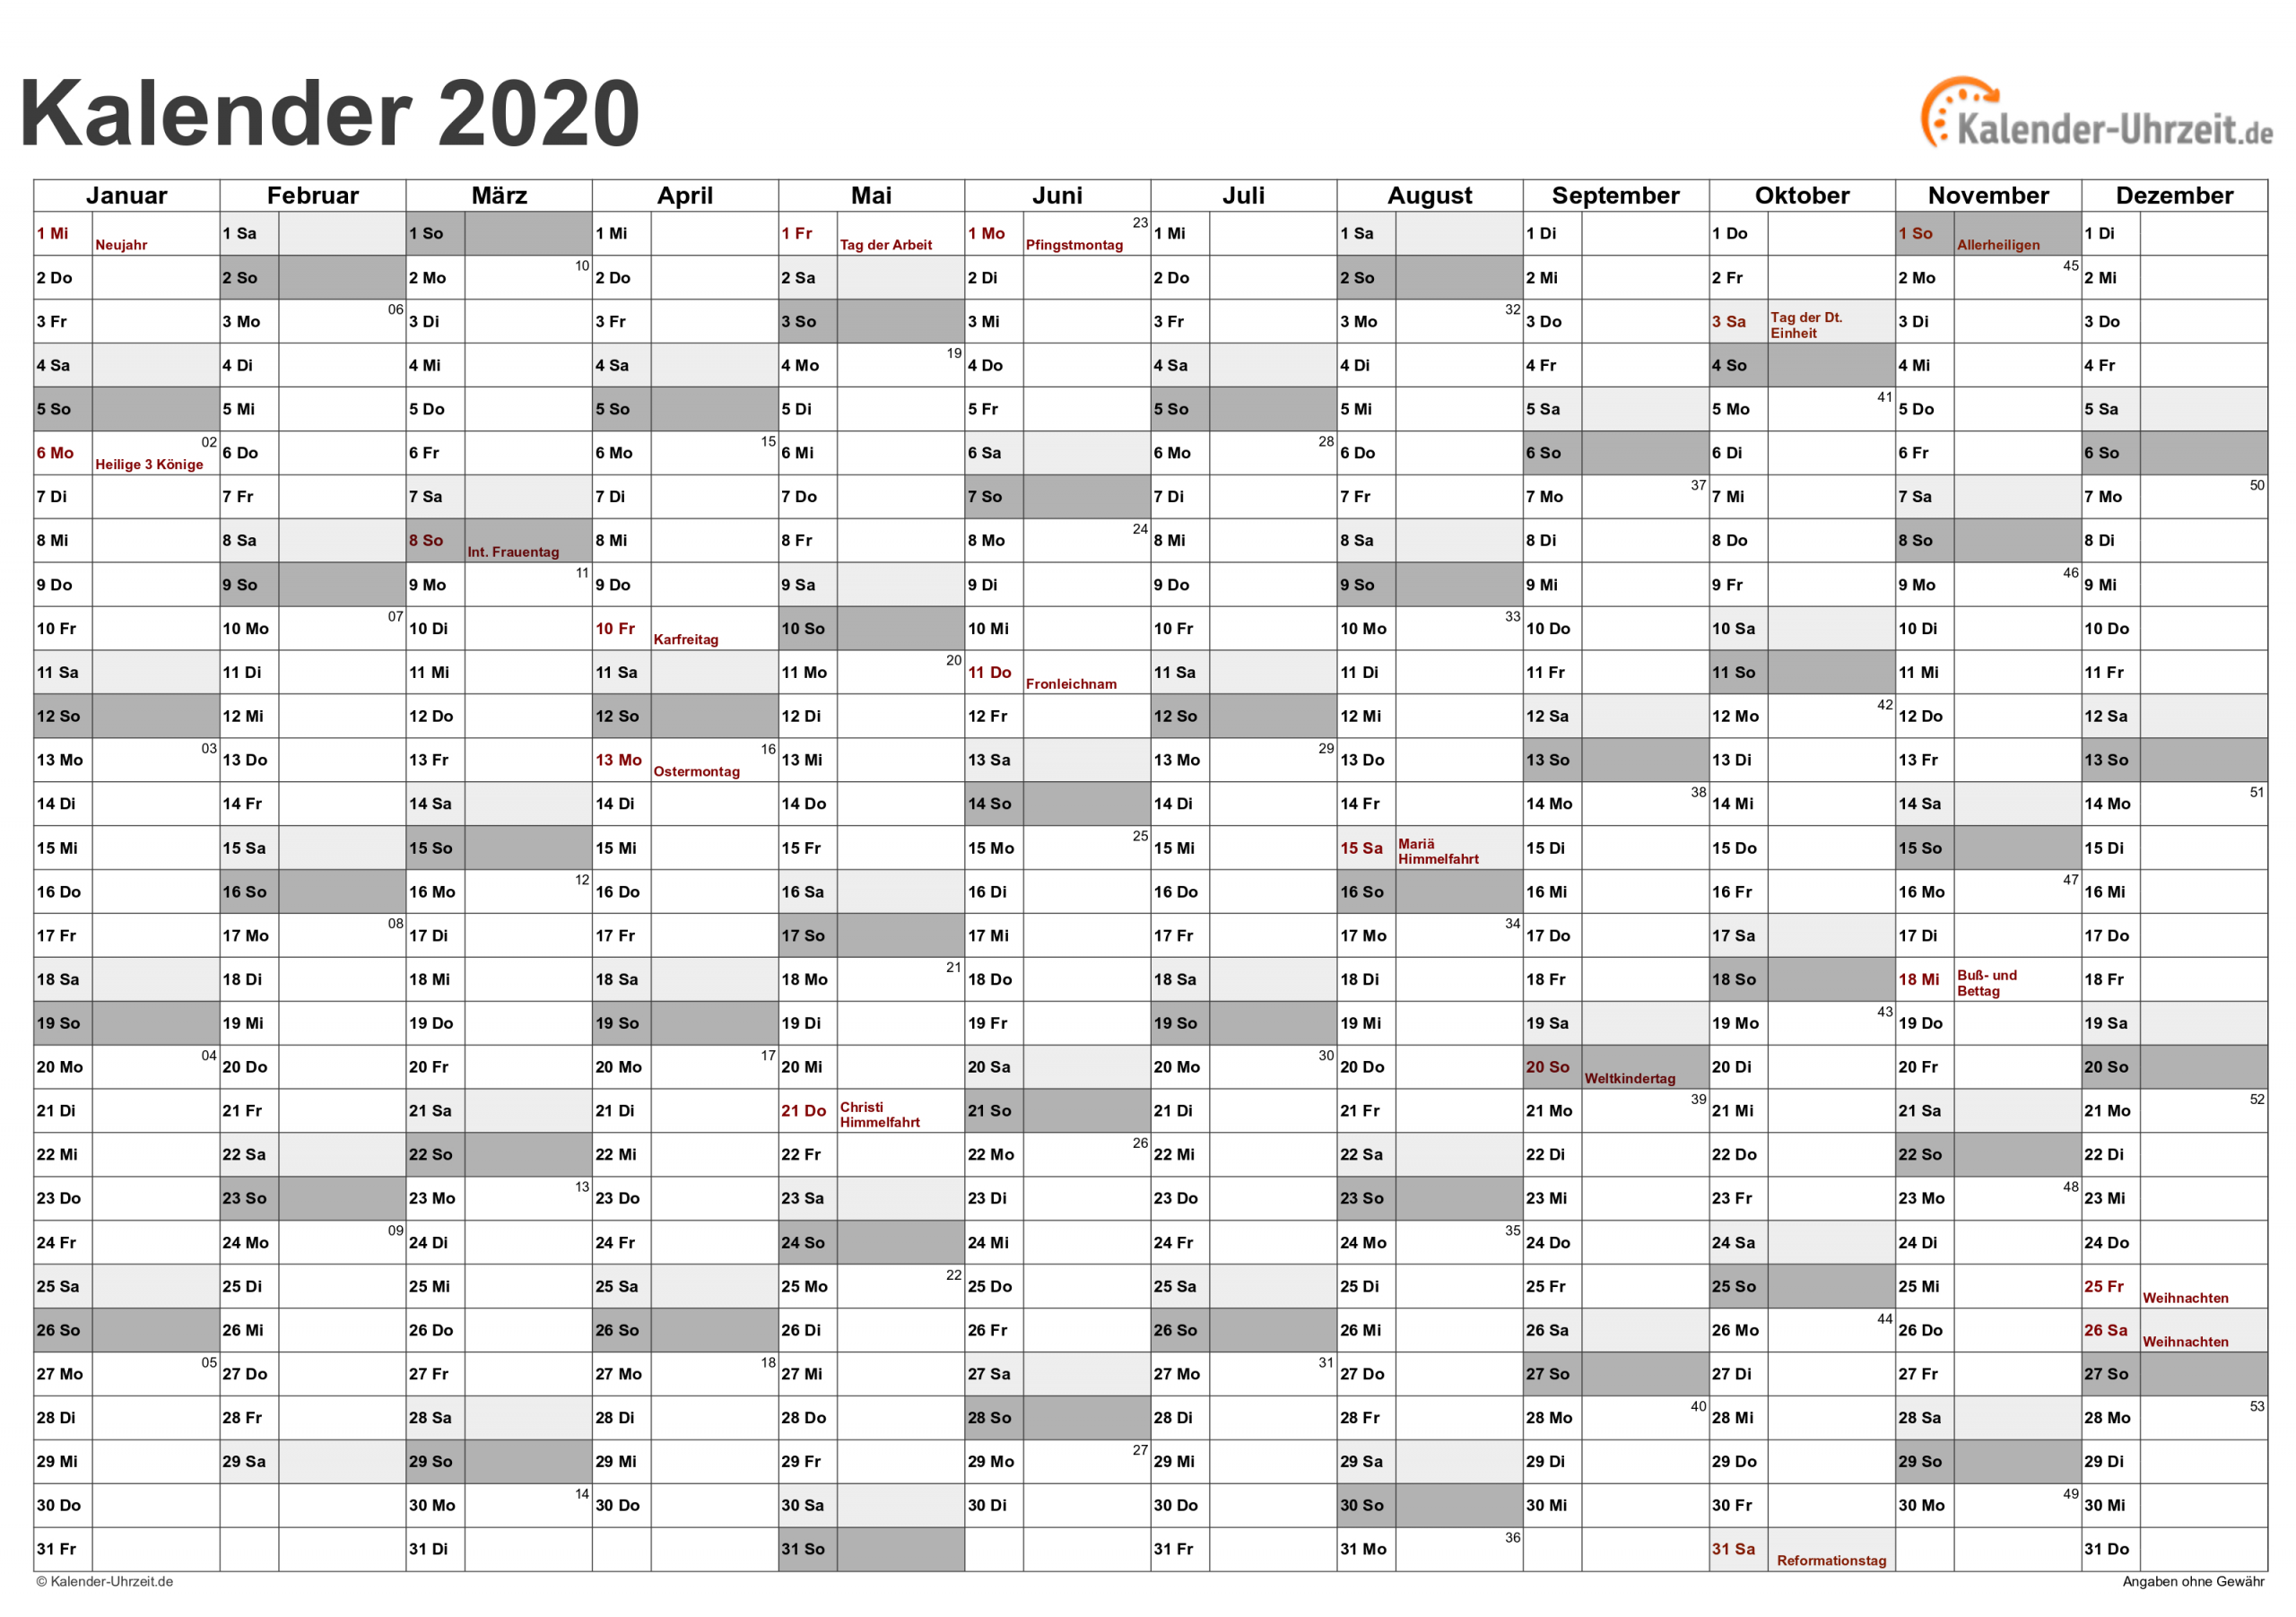 Kalender 2020 Zum Ausdrucken - Kostenlos in Jahreskalender Zum Ausdrucken